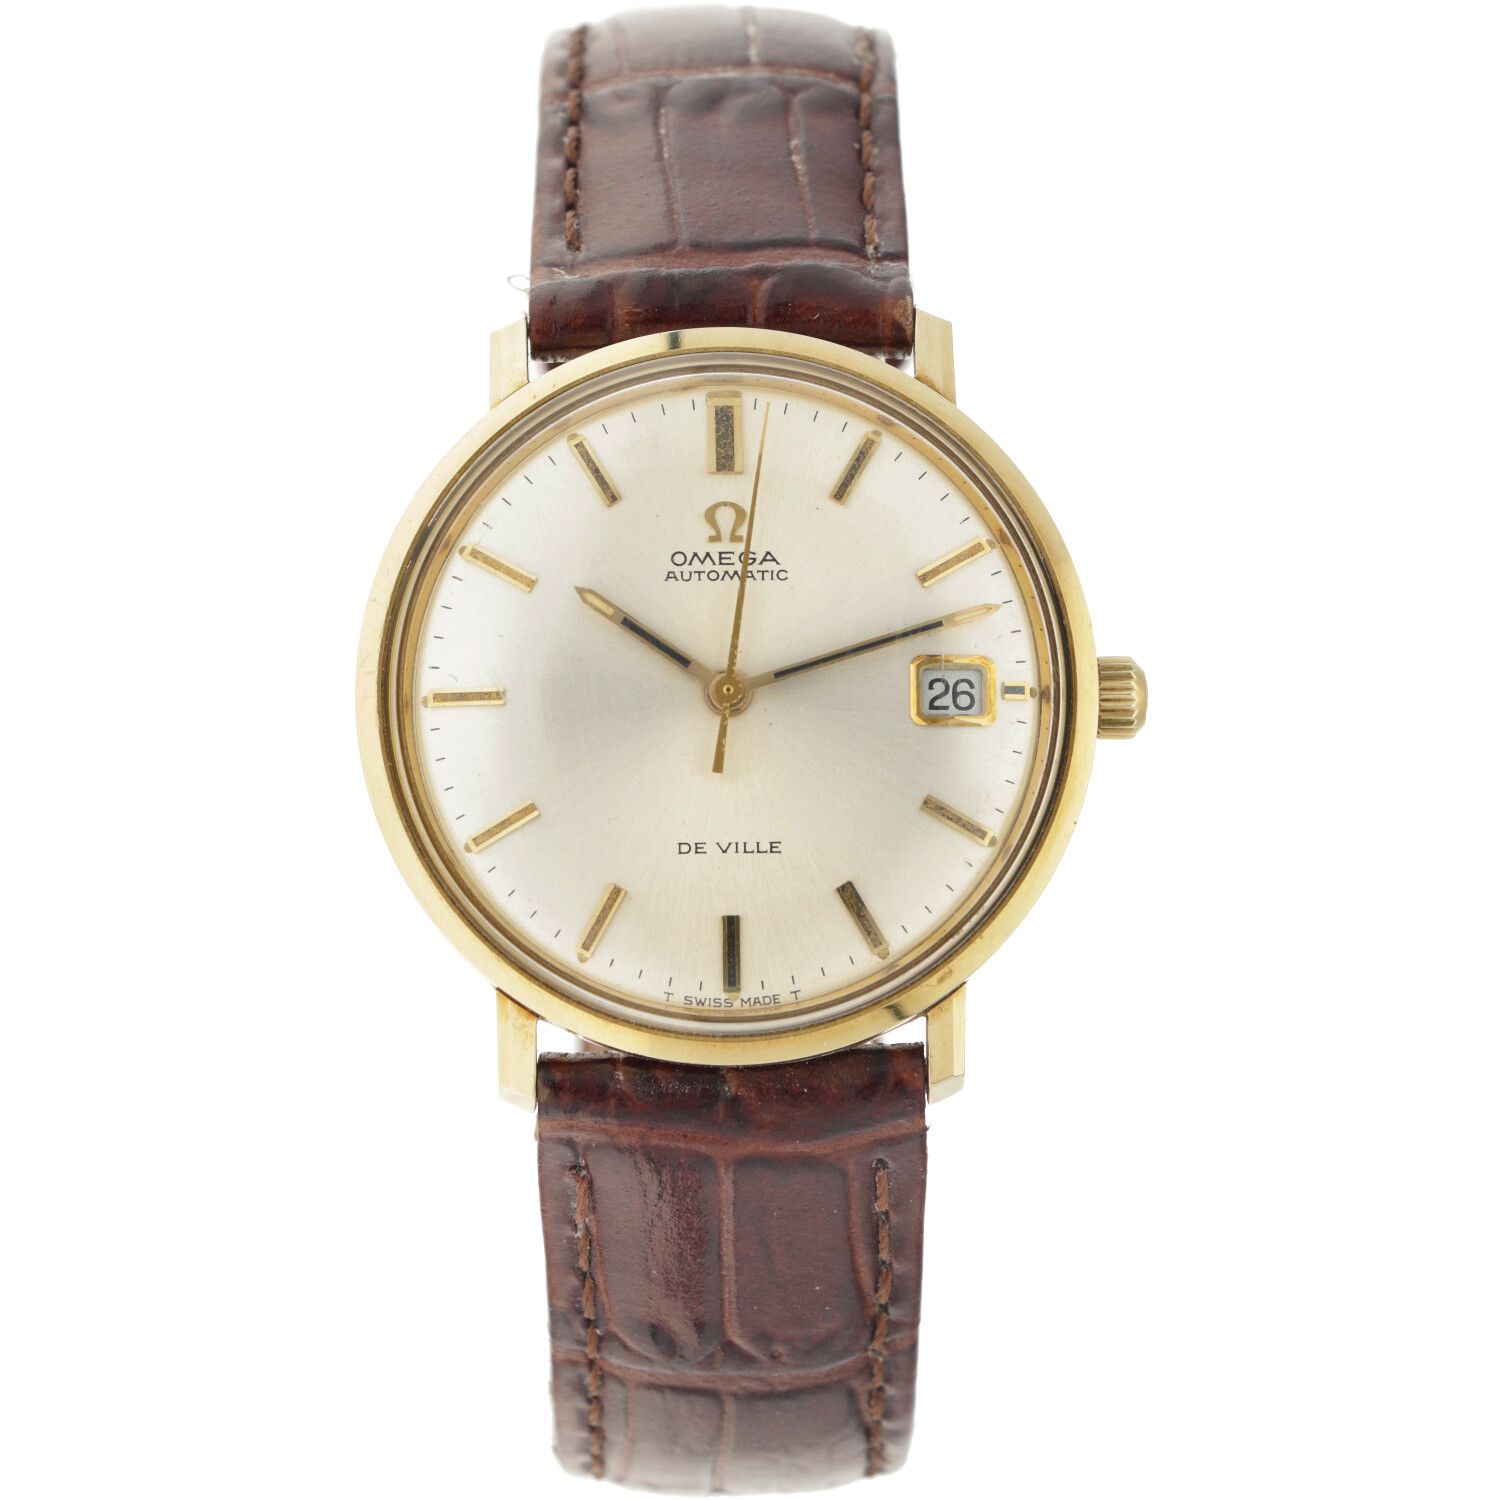 Omega de Ville 166033 - Men's watch - approx. 1970. Gehäuse: Gelbgold (14 kt.) -&hellip;